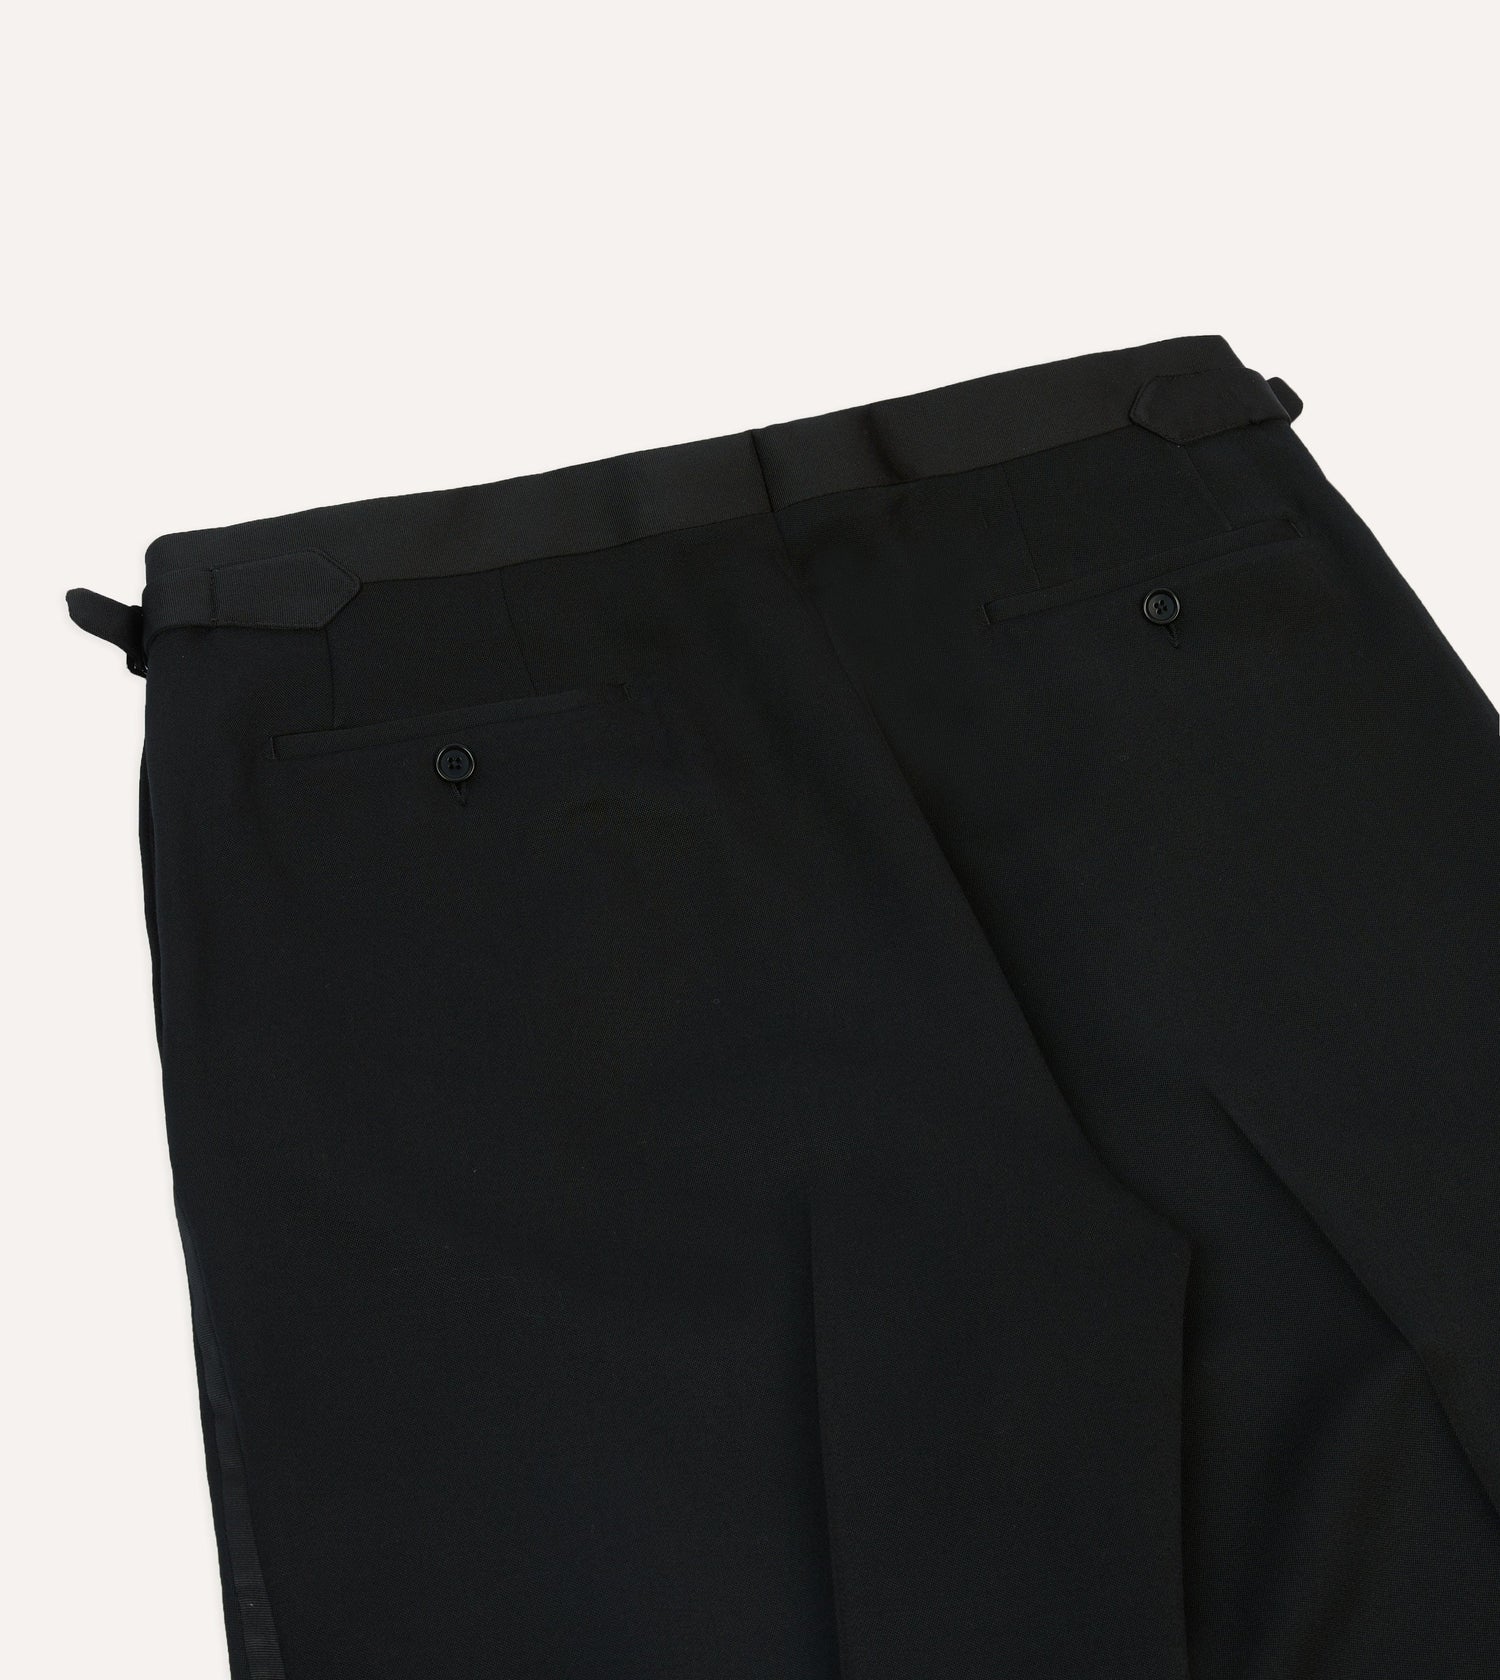 Black Barathea Wool Single Pleat Dinner Trousers